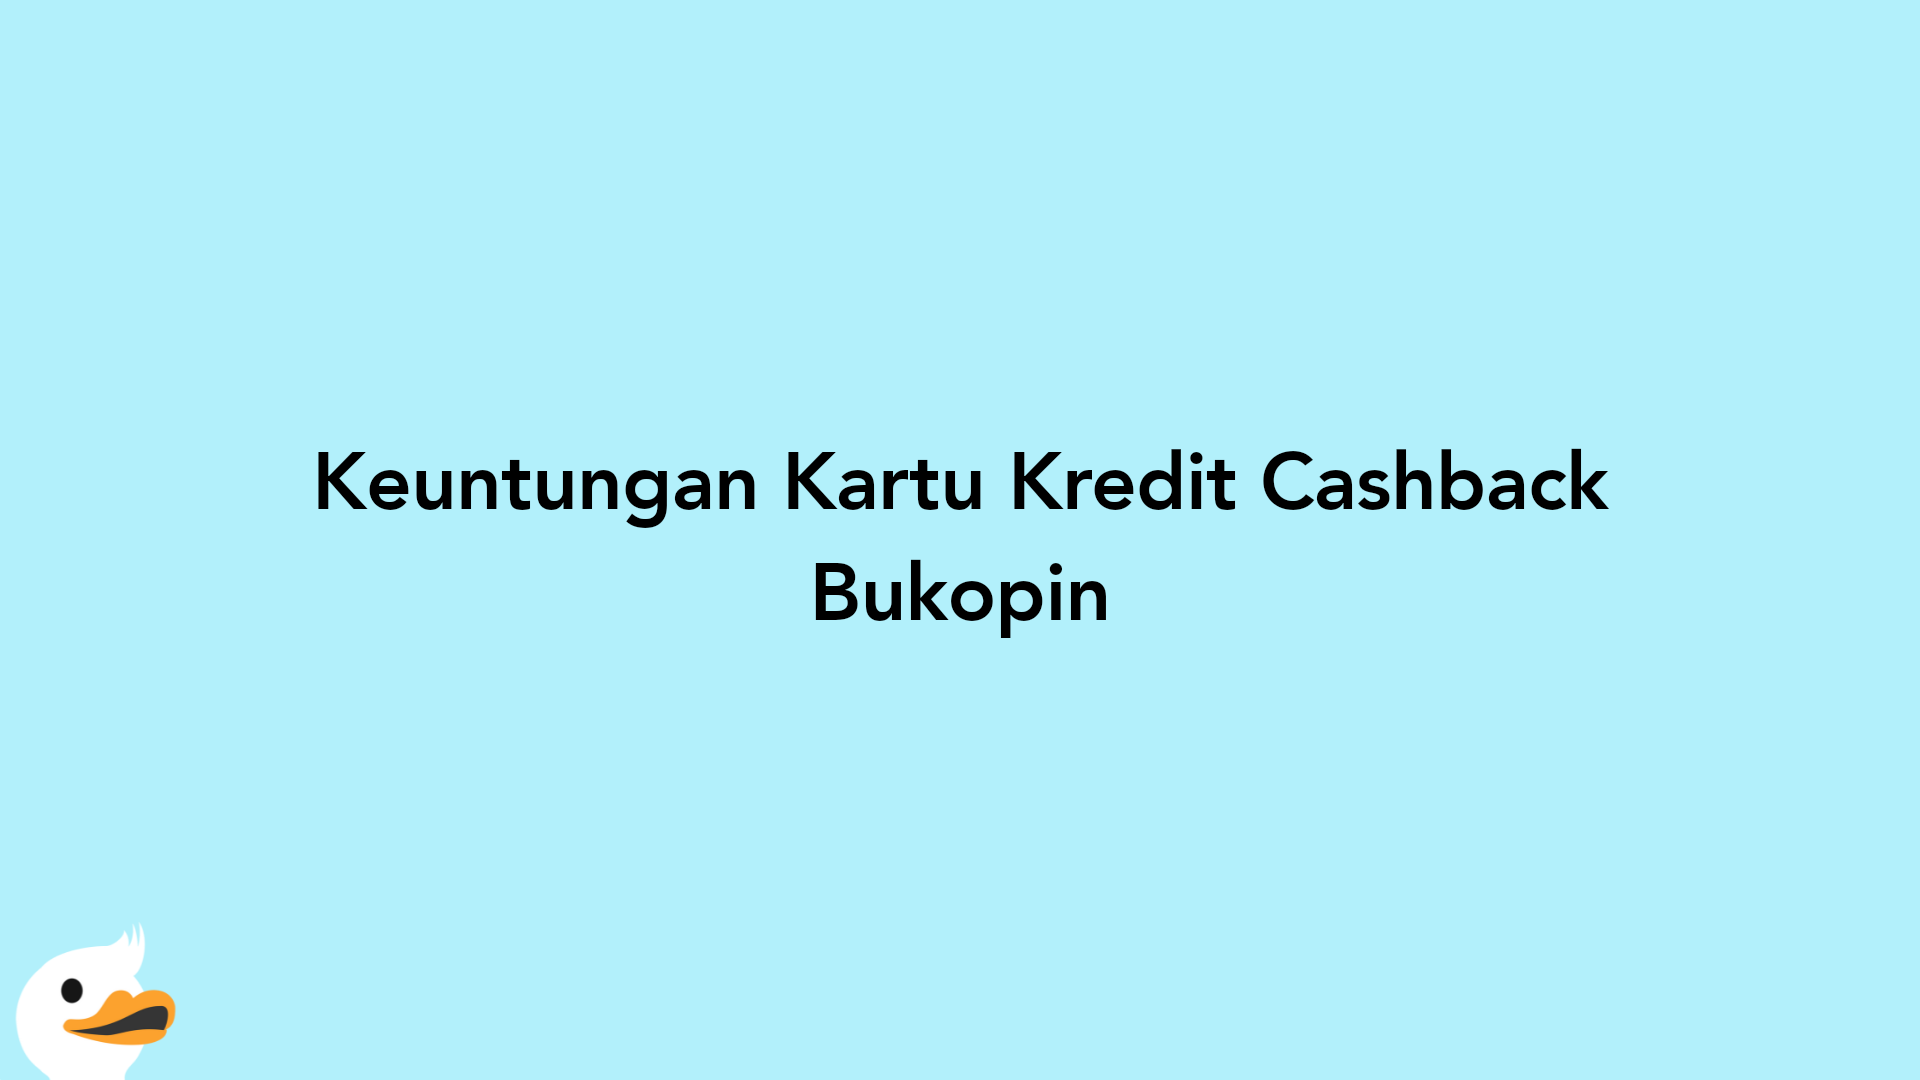 Keuntungan Kartu Kredit Cashback Bukopin